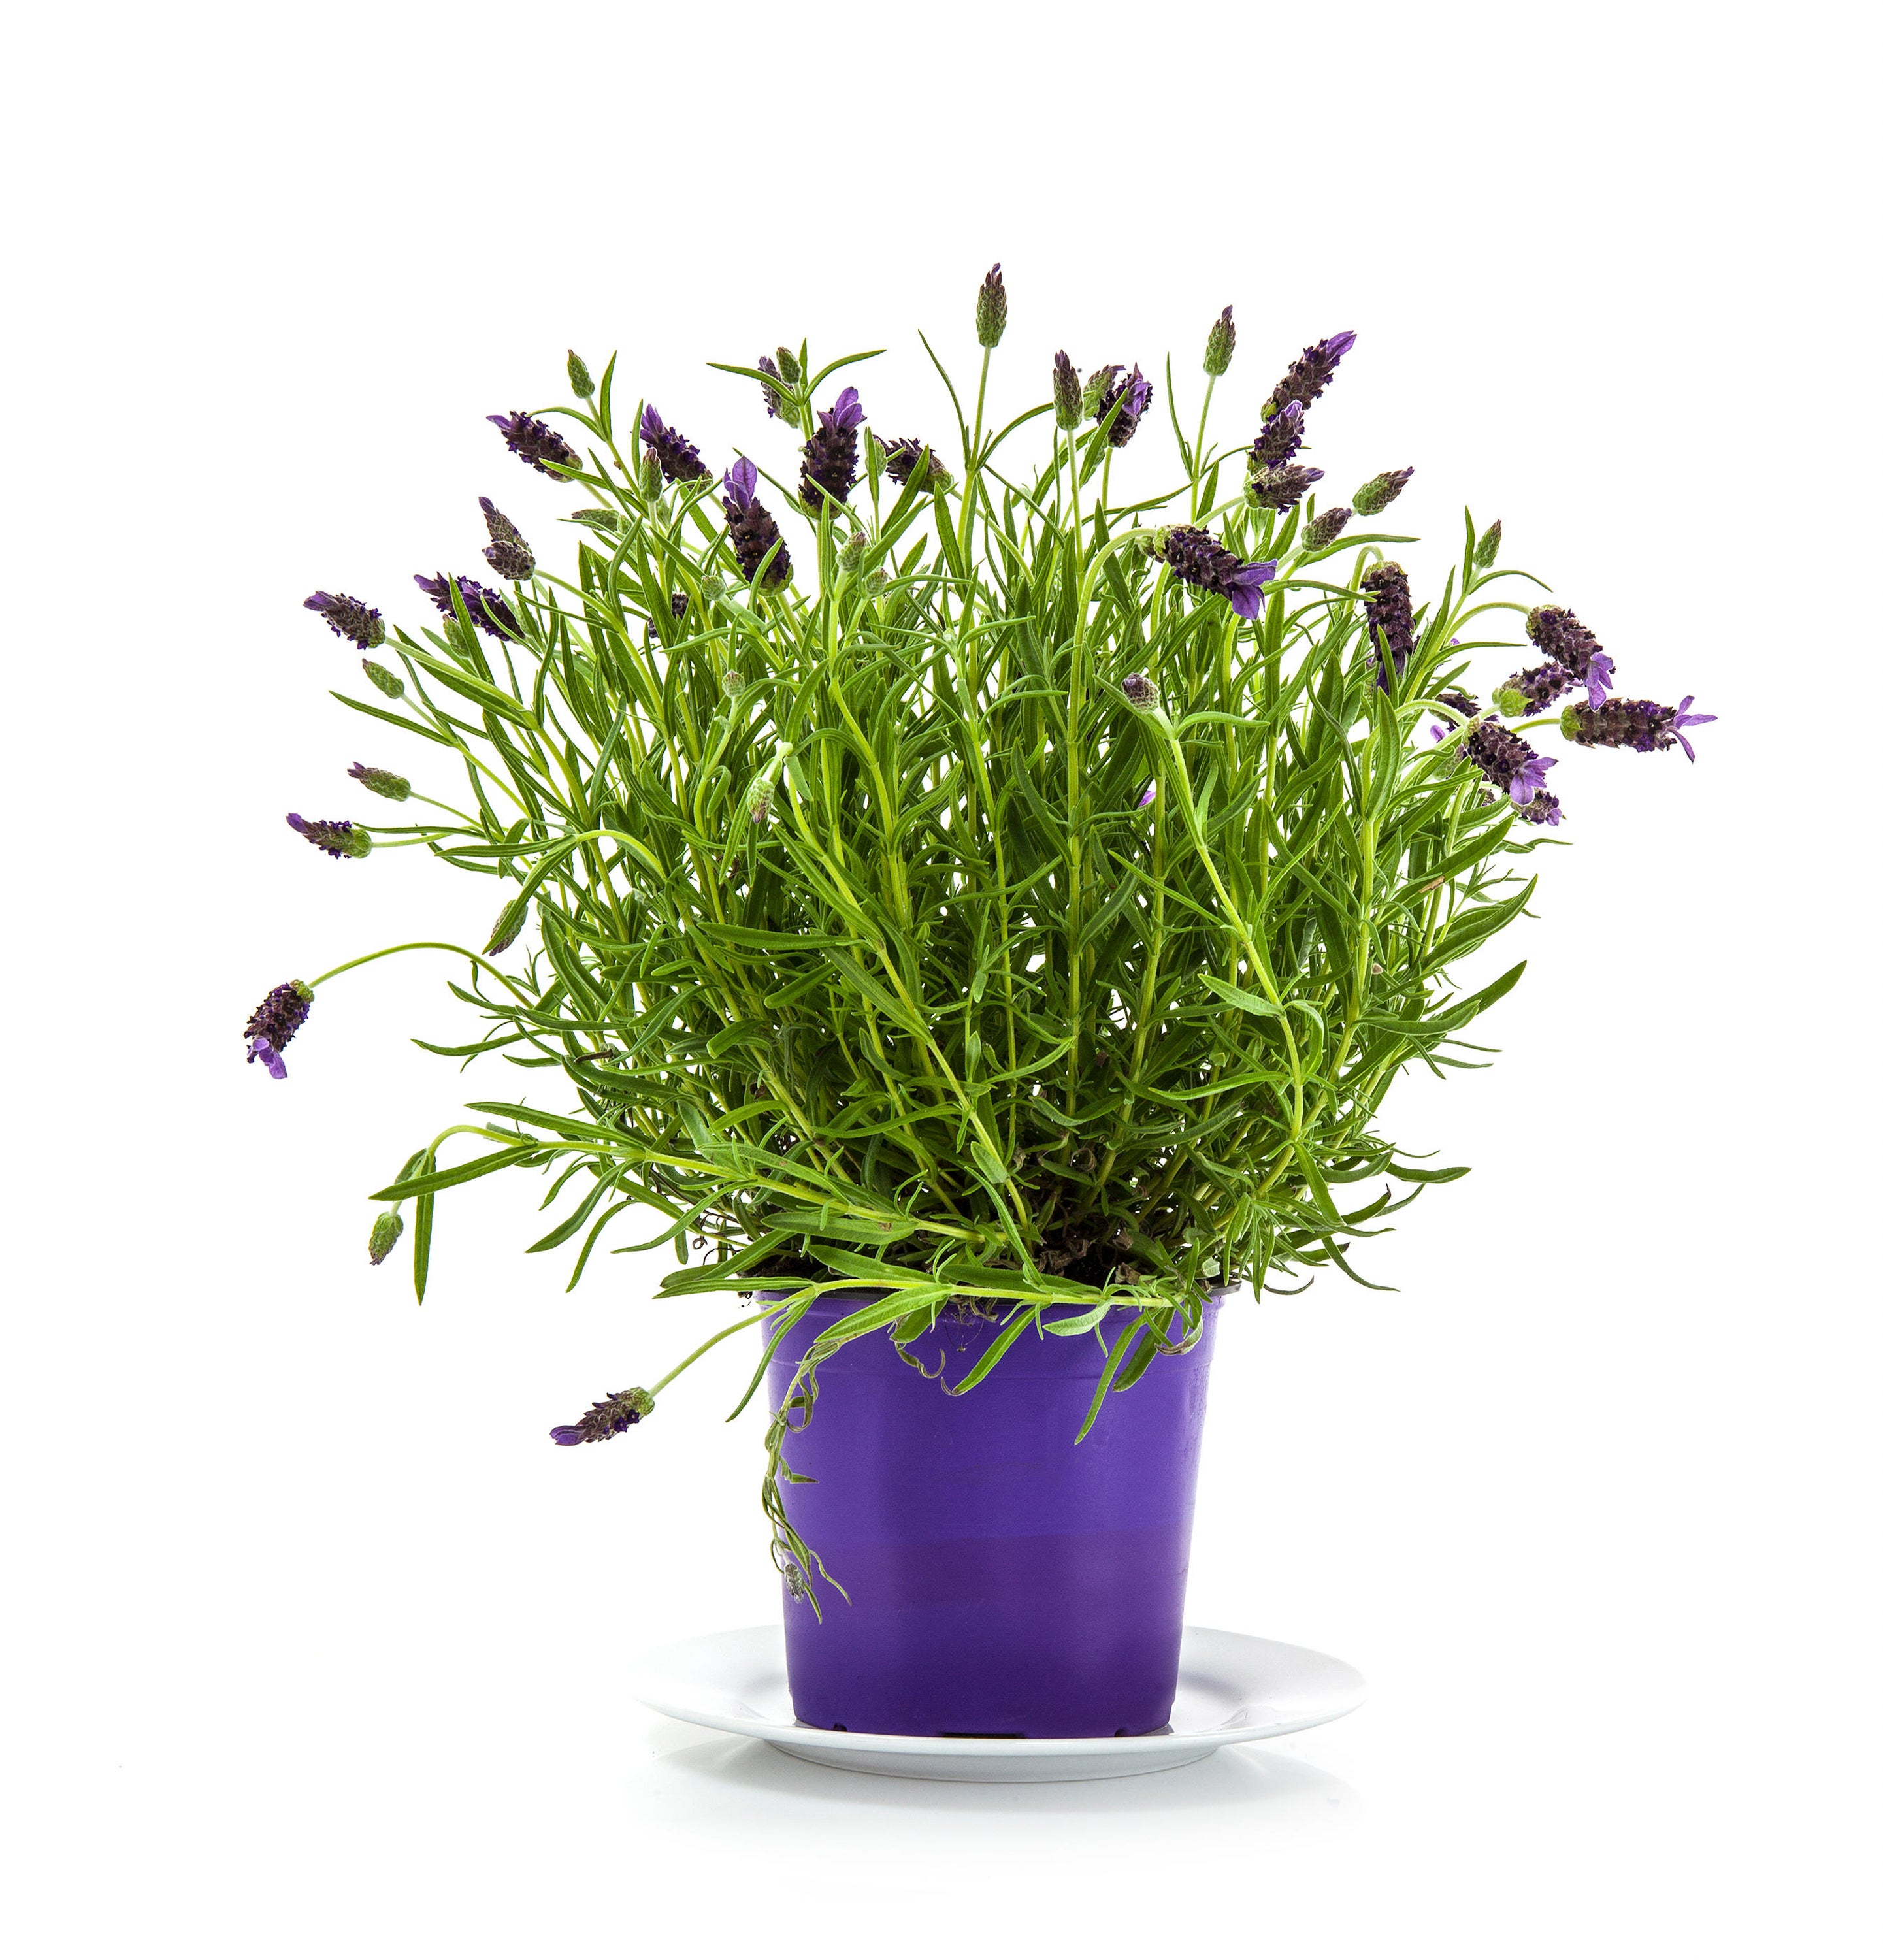 a lavender plant